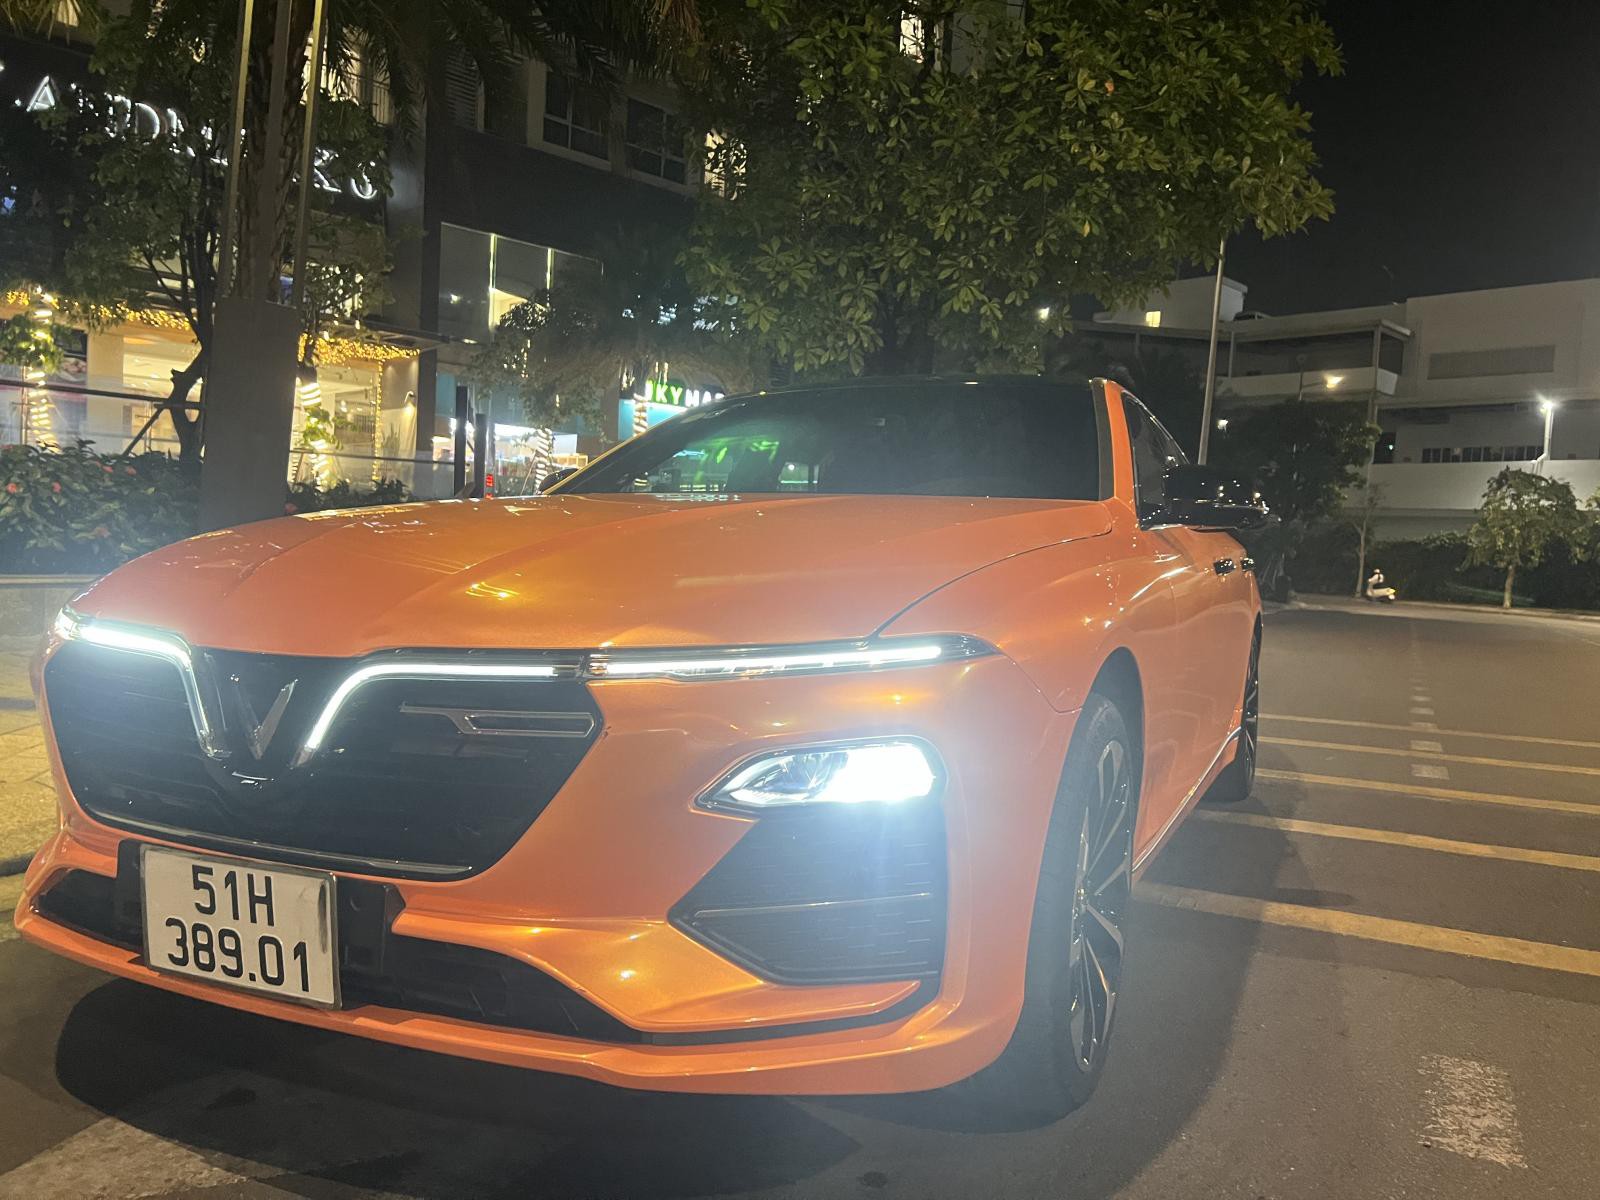 Jonway Englong LuxA 2.0 Cao cấp  2019 - Vinfat Lux A 2.0 Bản cao cấp nhất Mua T12/2020 màu đỏ cam xe đẹp như mới 